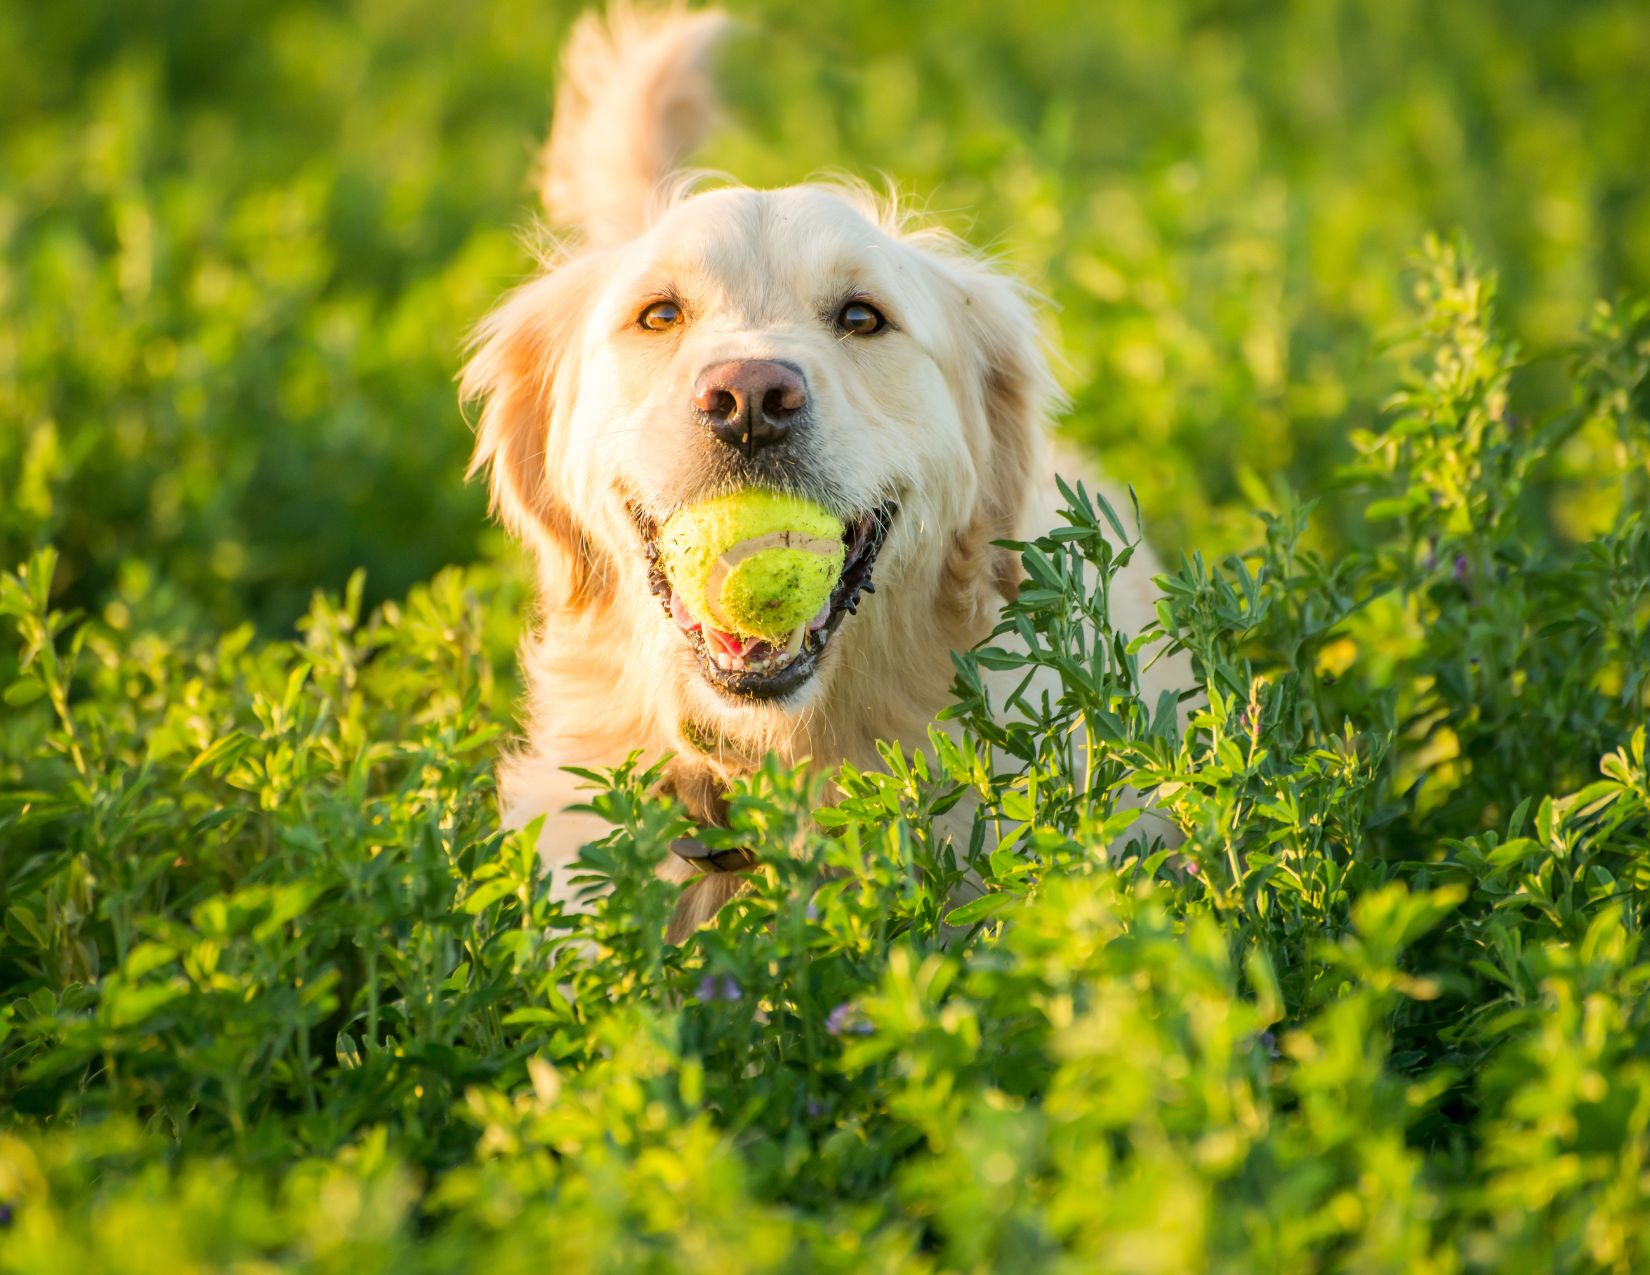 A golden retriever in a field fetching at tennis ball. 